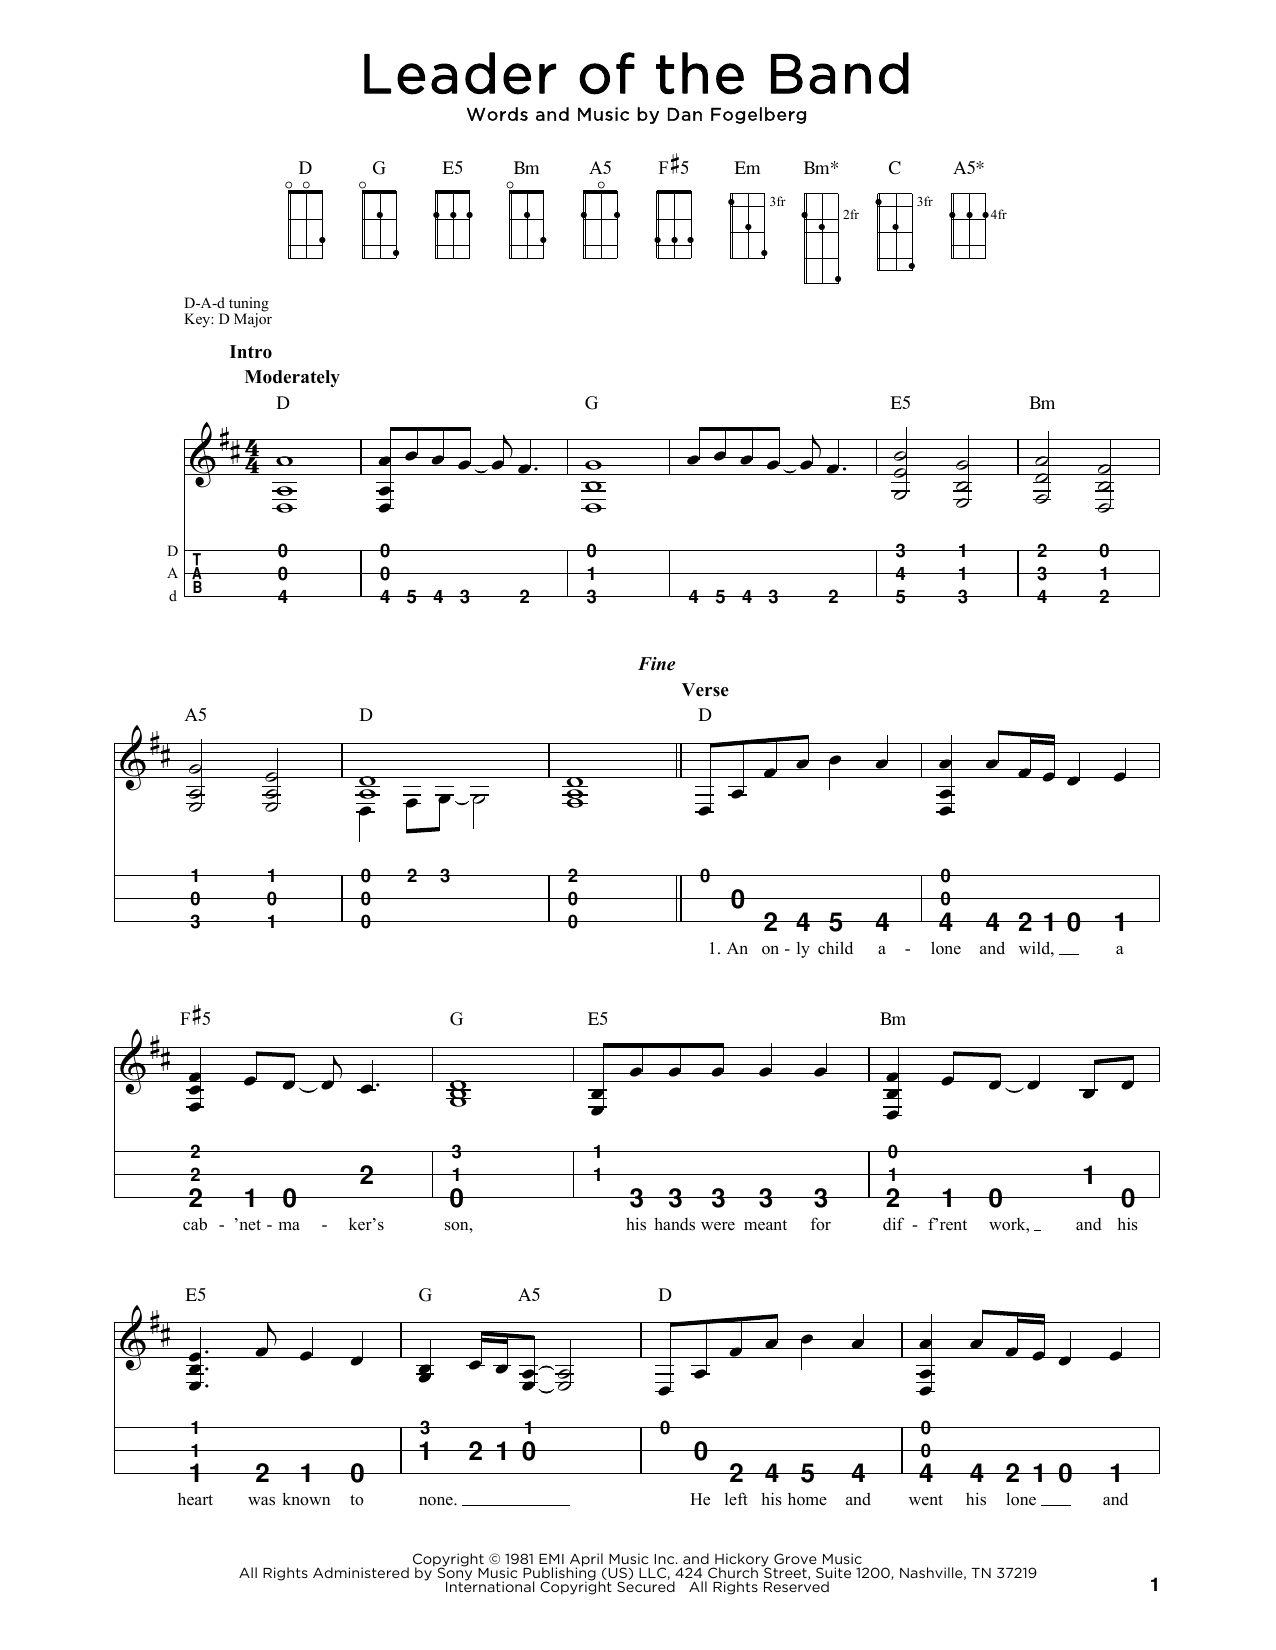 Dan Fogelberg Leader Of The Band (arr. Steven B. Eulberg) Sheet Music Notes & Chords for Dulcimer - Download or Print PDF